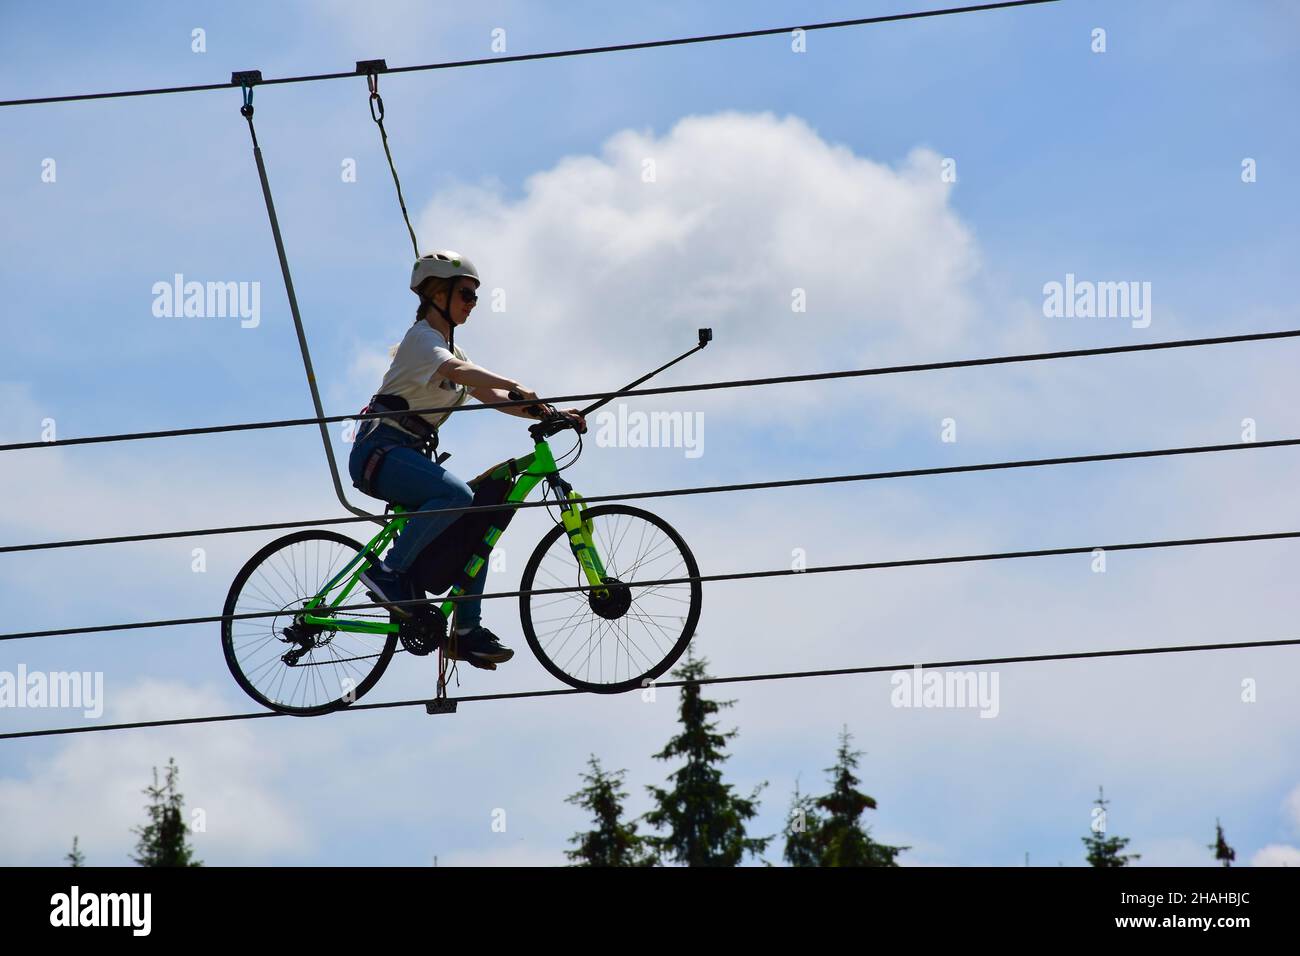 Das Mädchen fährt auf einem Drahtseil mit dem Fahrrad, trägt einen Helm und eine Sonnenbrille und macht ein Selfie. Attraktion auf einem Hintergrund von blauem Himmel Stockfoto